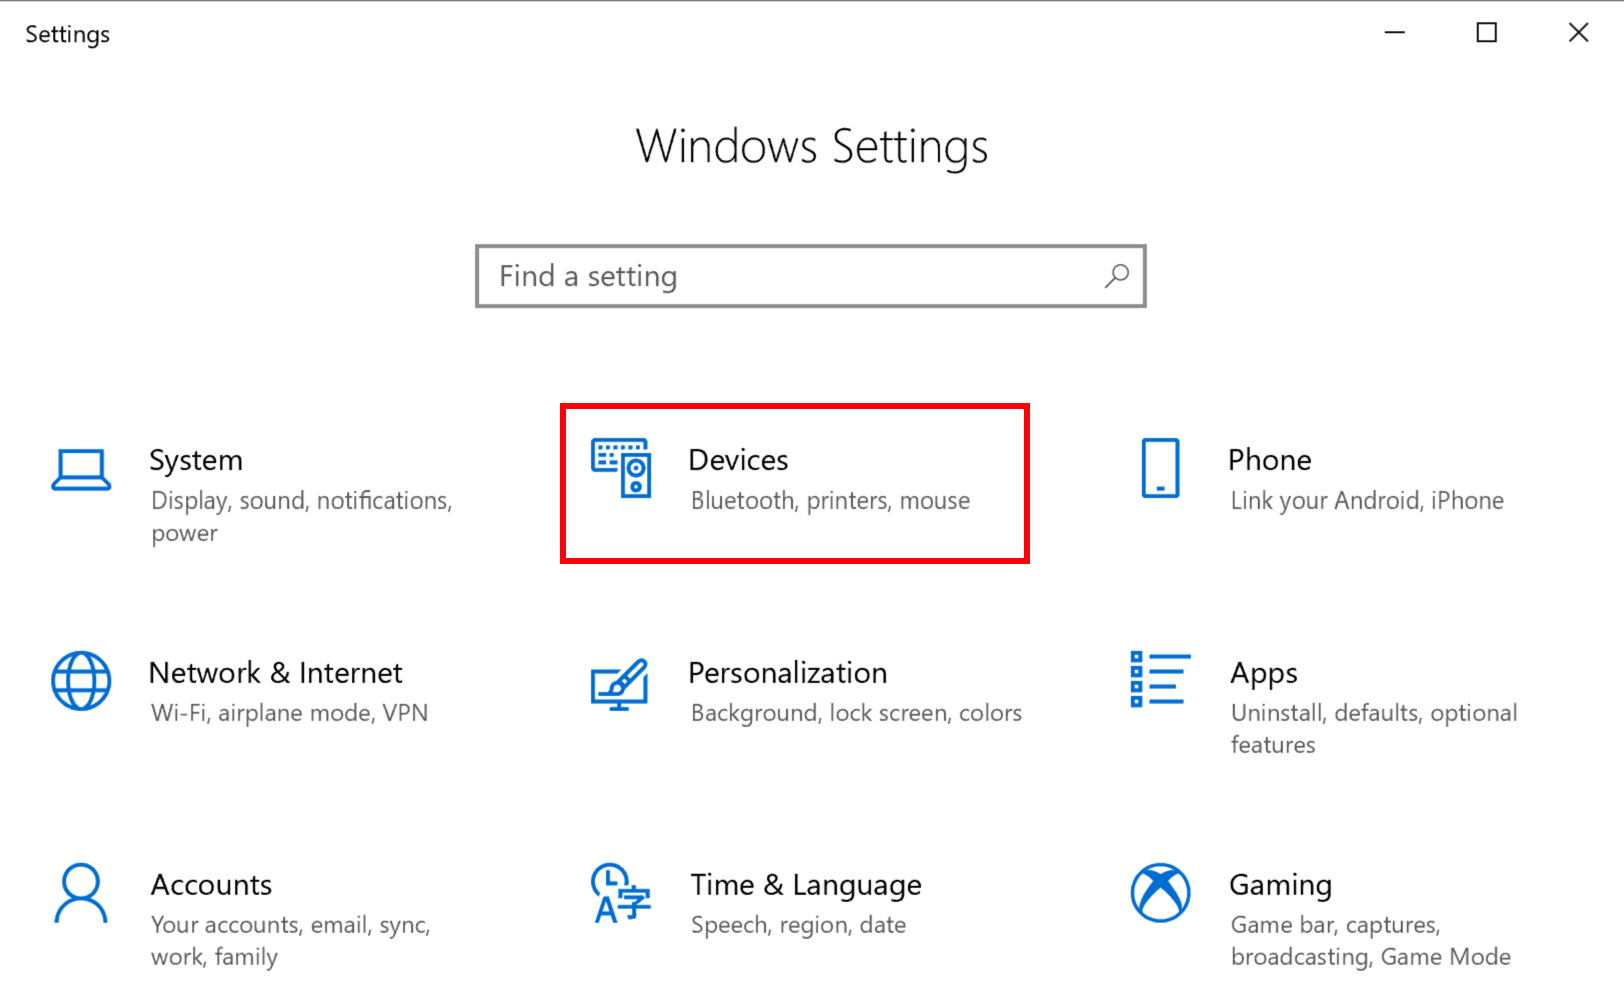 La página Configuración de Windows abierta con el ícono Dispositivos resaltado con un cuadro rojo.